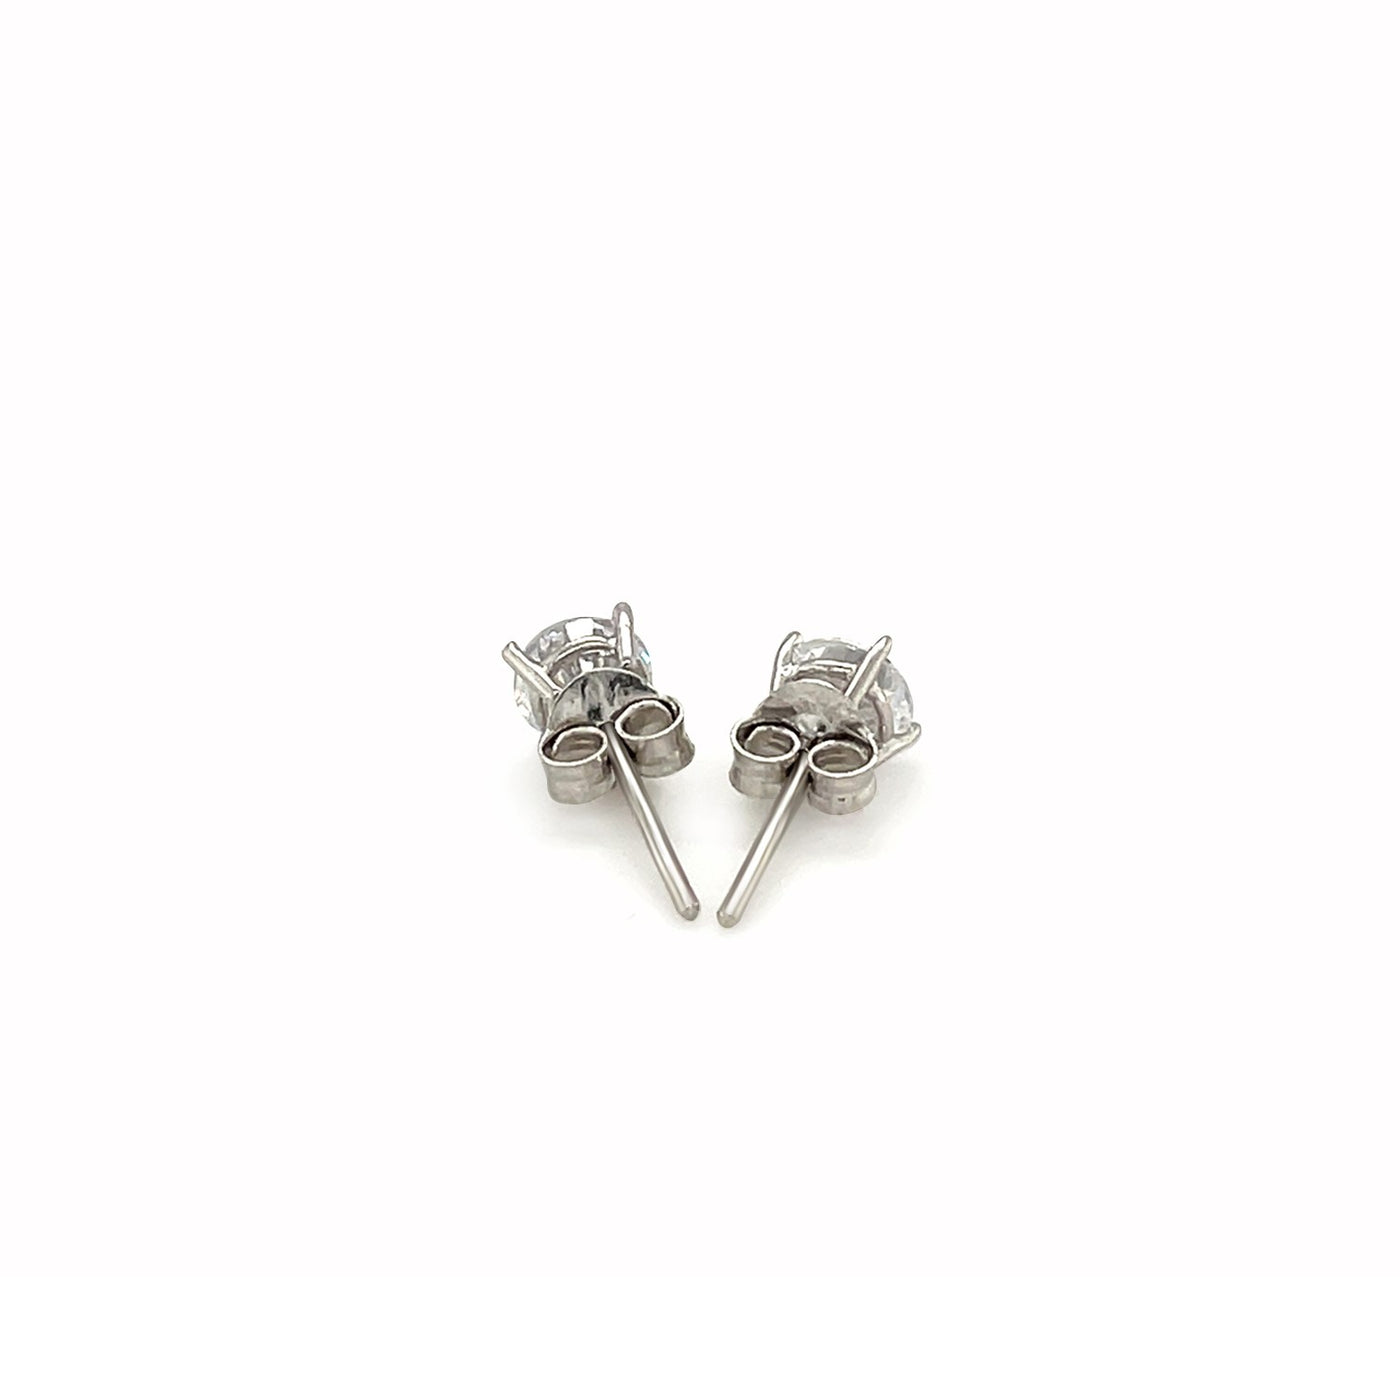 2-Pc. Set Cubic Zirconia Sterling Silver Stud Earrings (3mm)